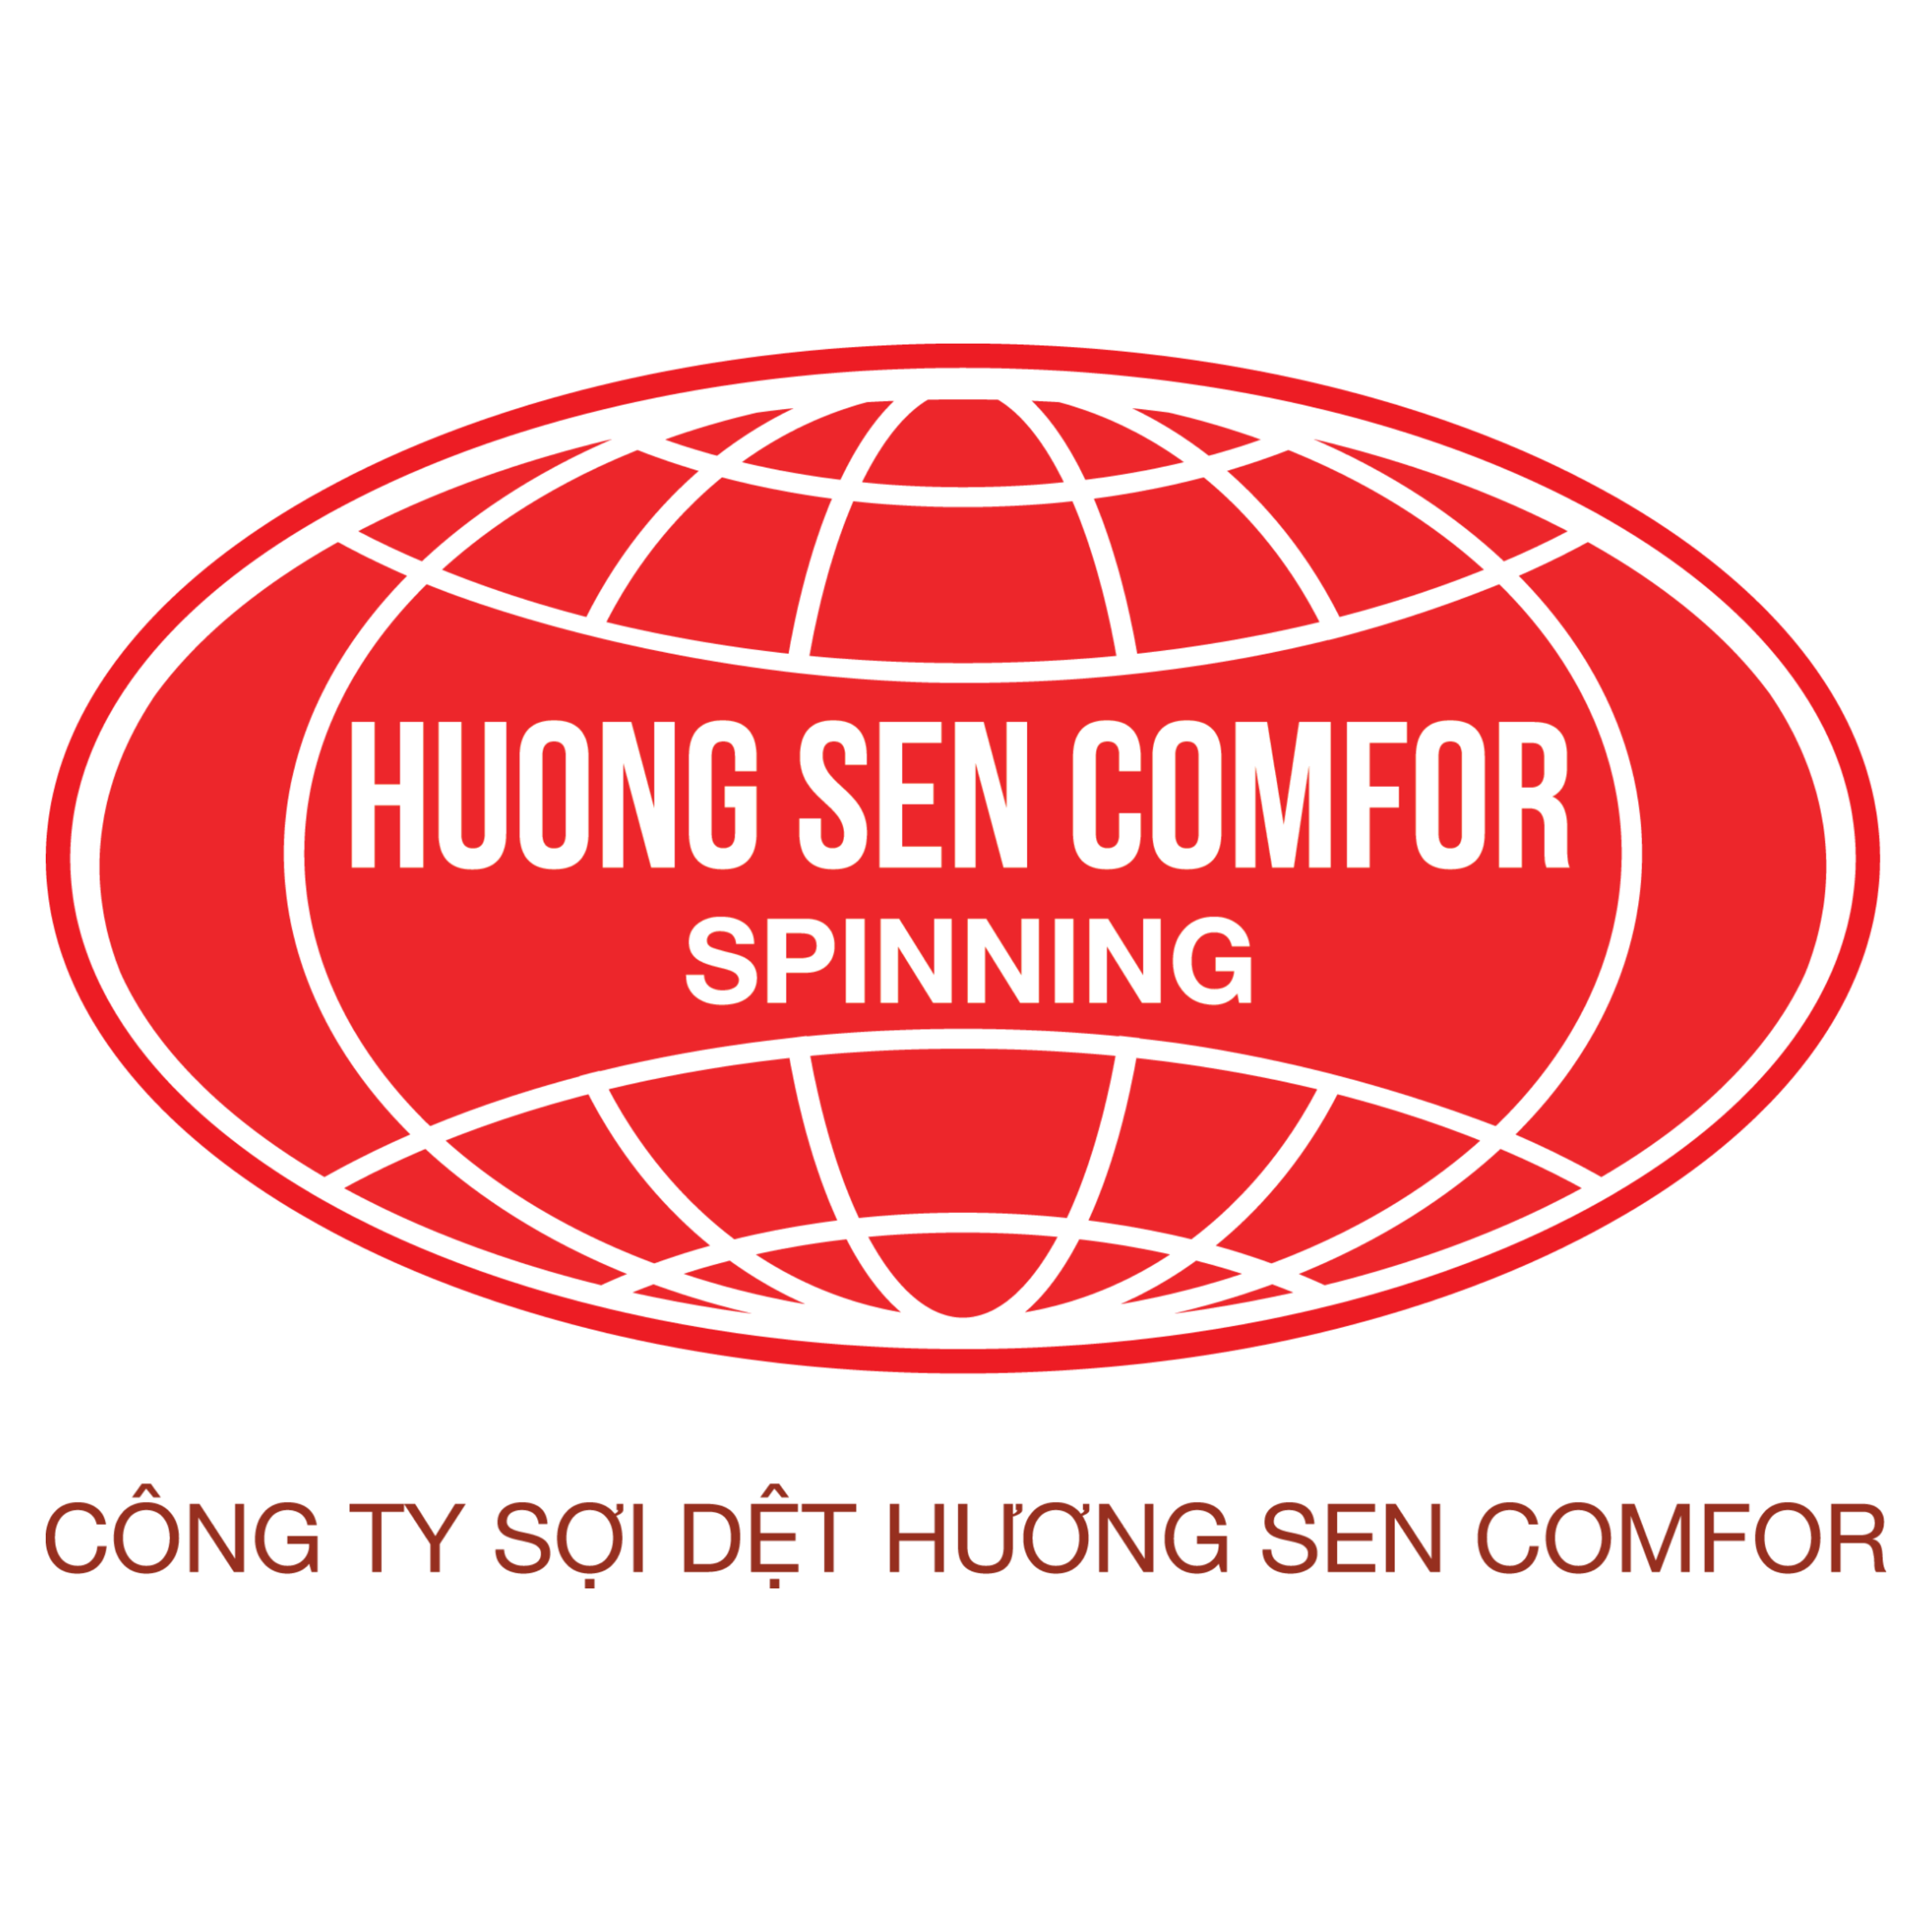 Công ty TNHH Sợi Dệt Hương Sen Comfor